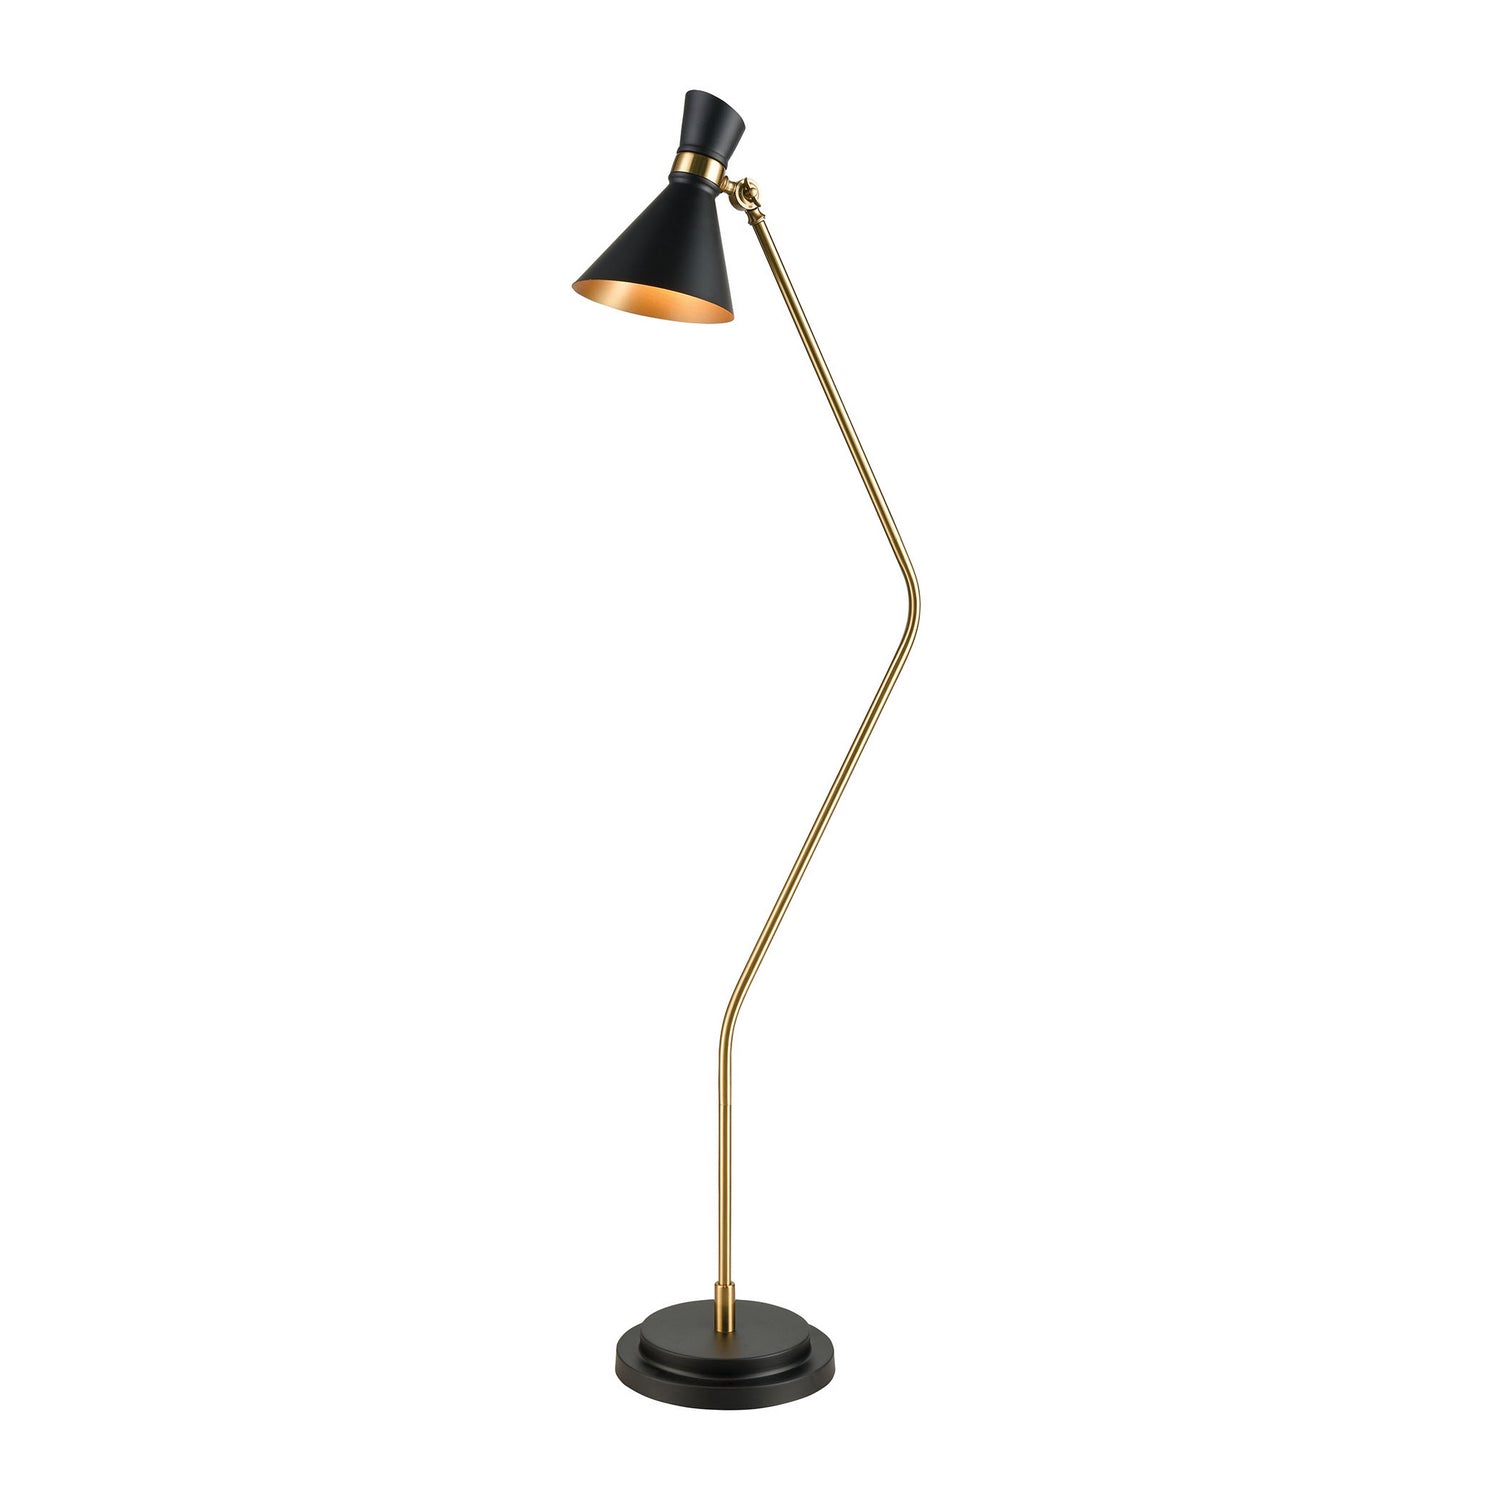 ELK Home - D3805 - One Light Floor Lamp - Virtuoso - Black